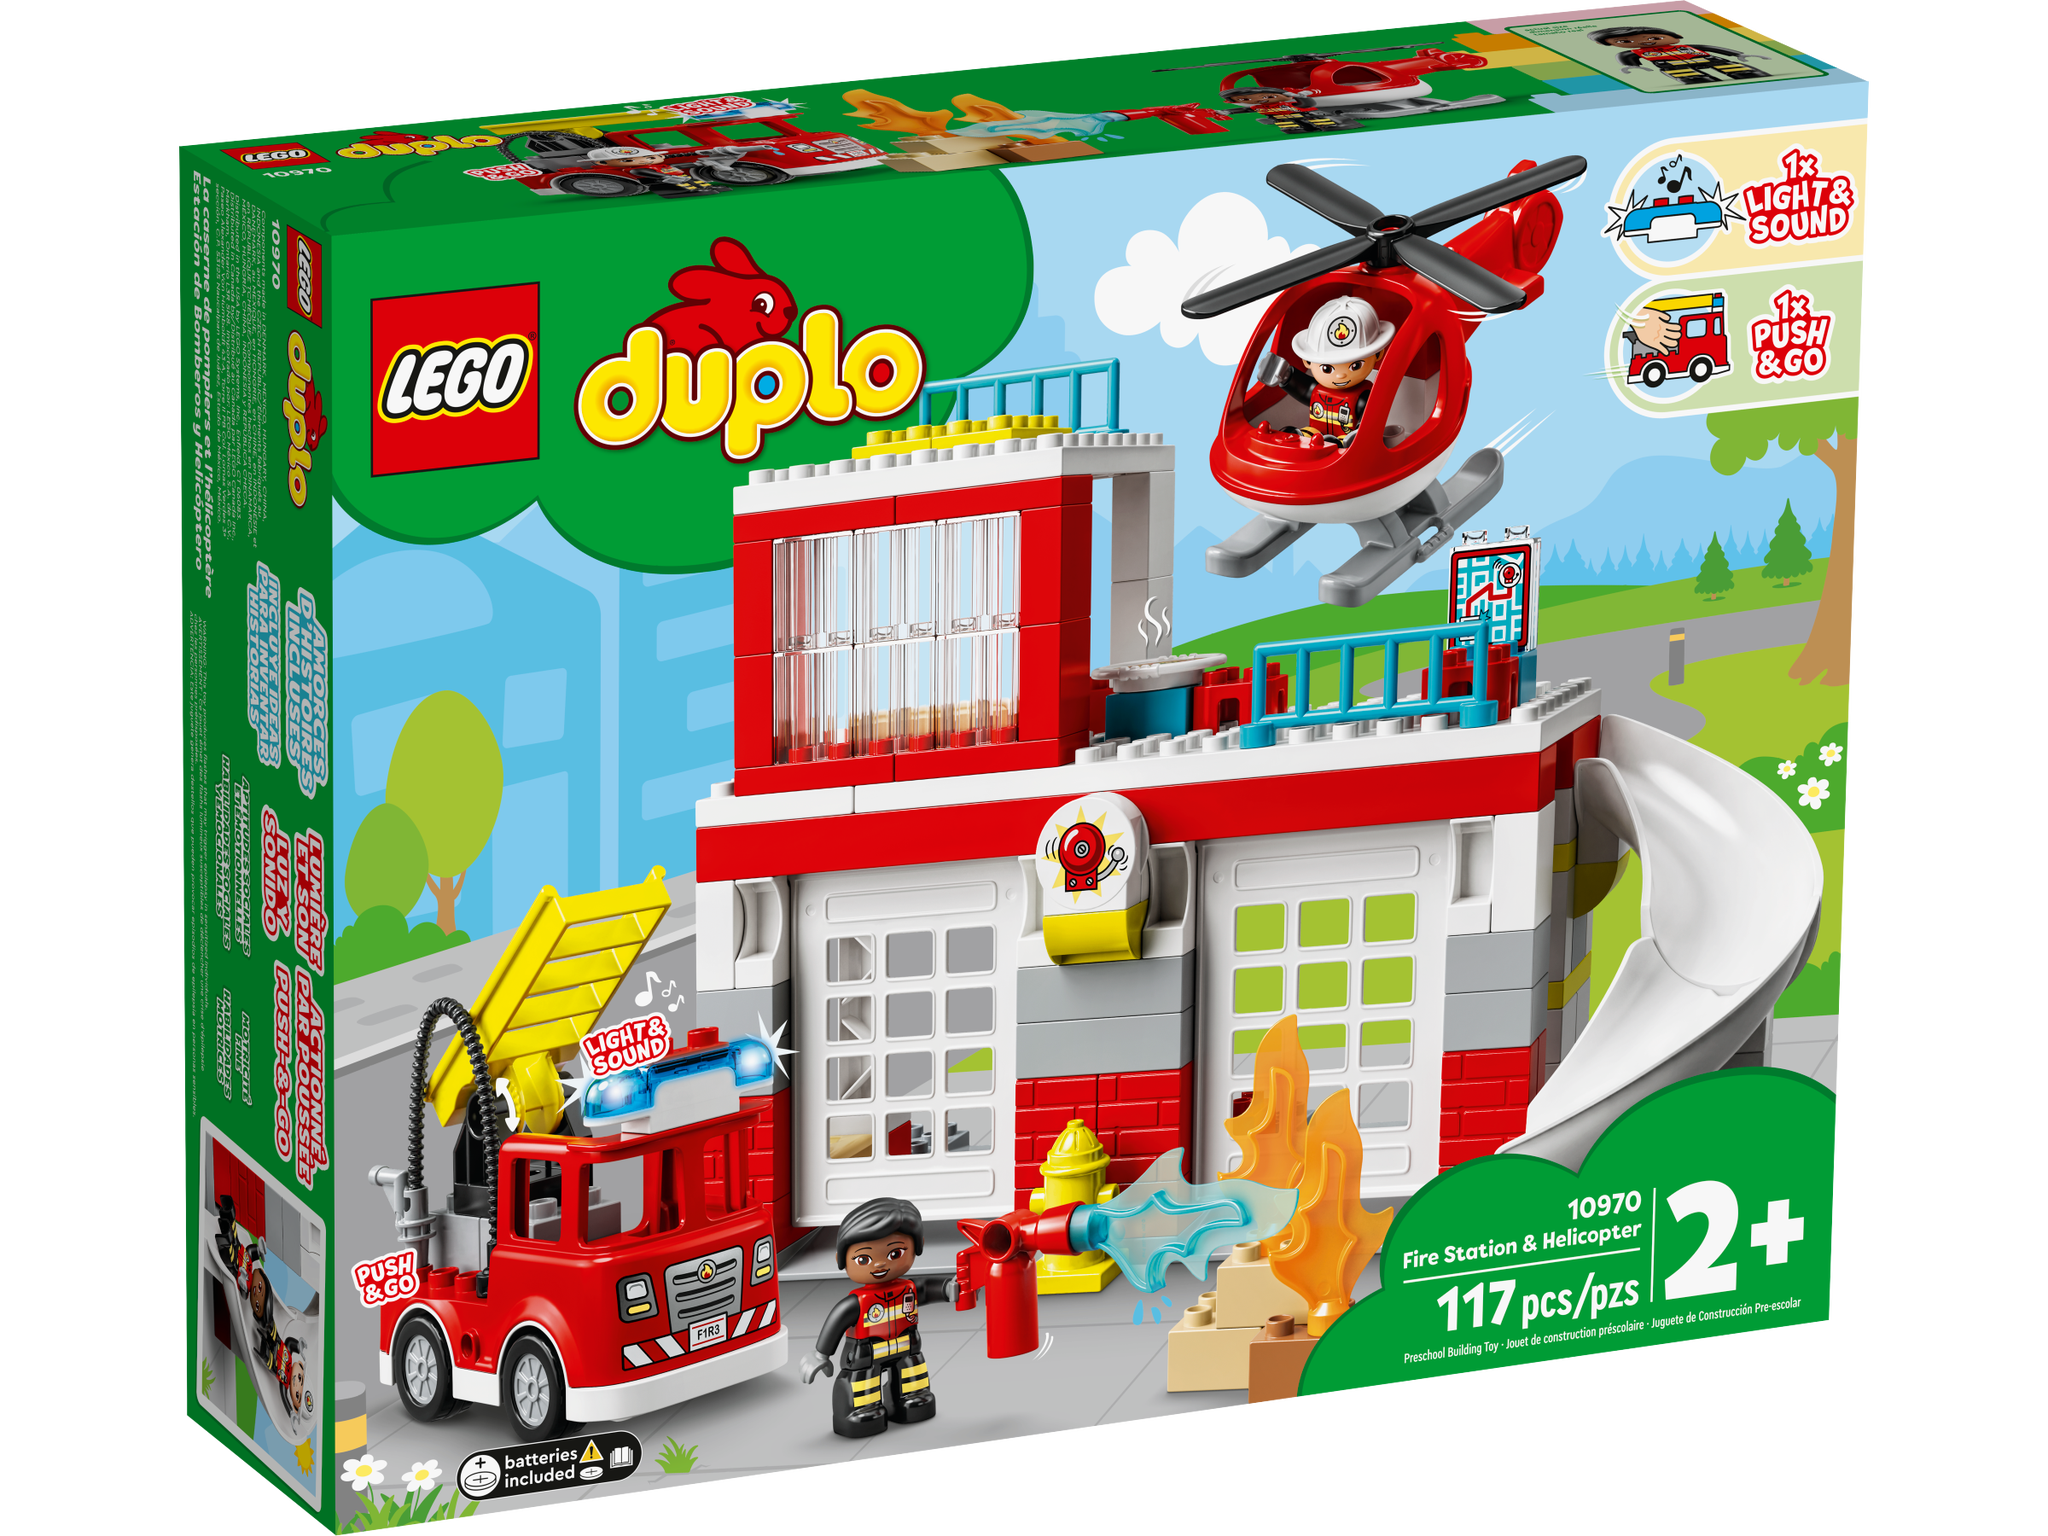 LEGO Duplo Feuerwehrwache mit Hubschrauber (10970) - im GOLDSTIEN.SHOP verfügbar mit Gratisversand ab Schweizer Lager! (5702017153681)